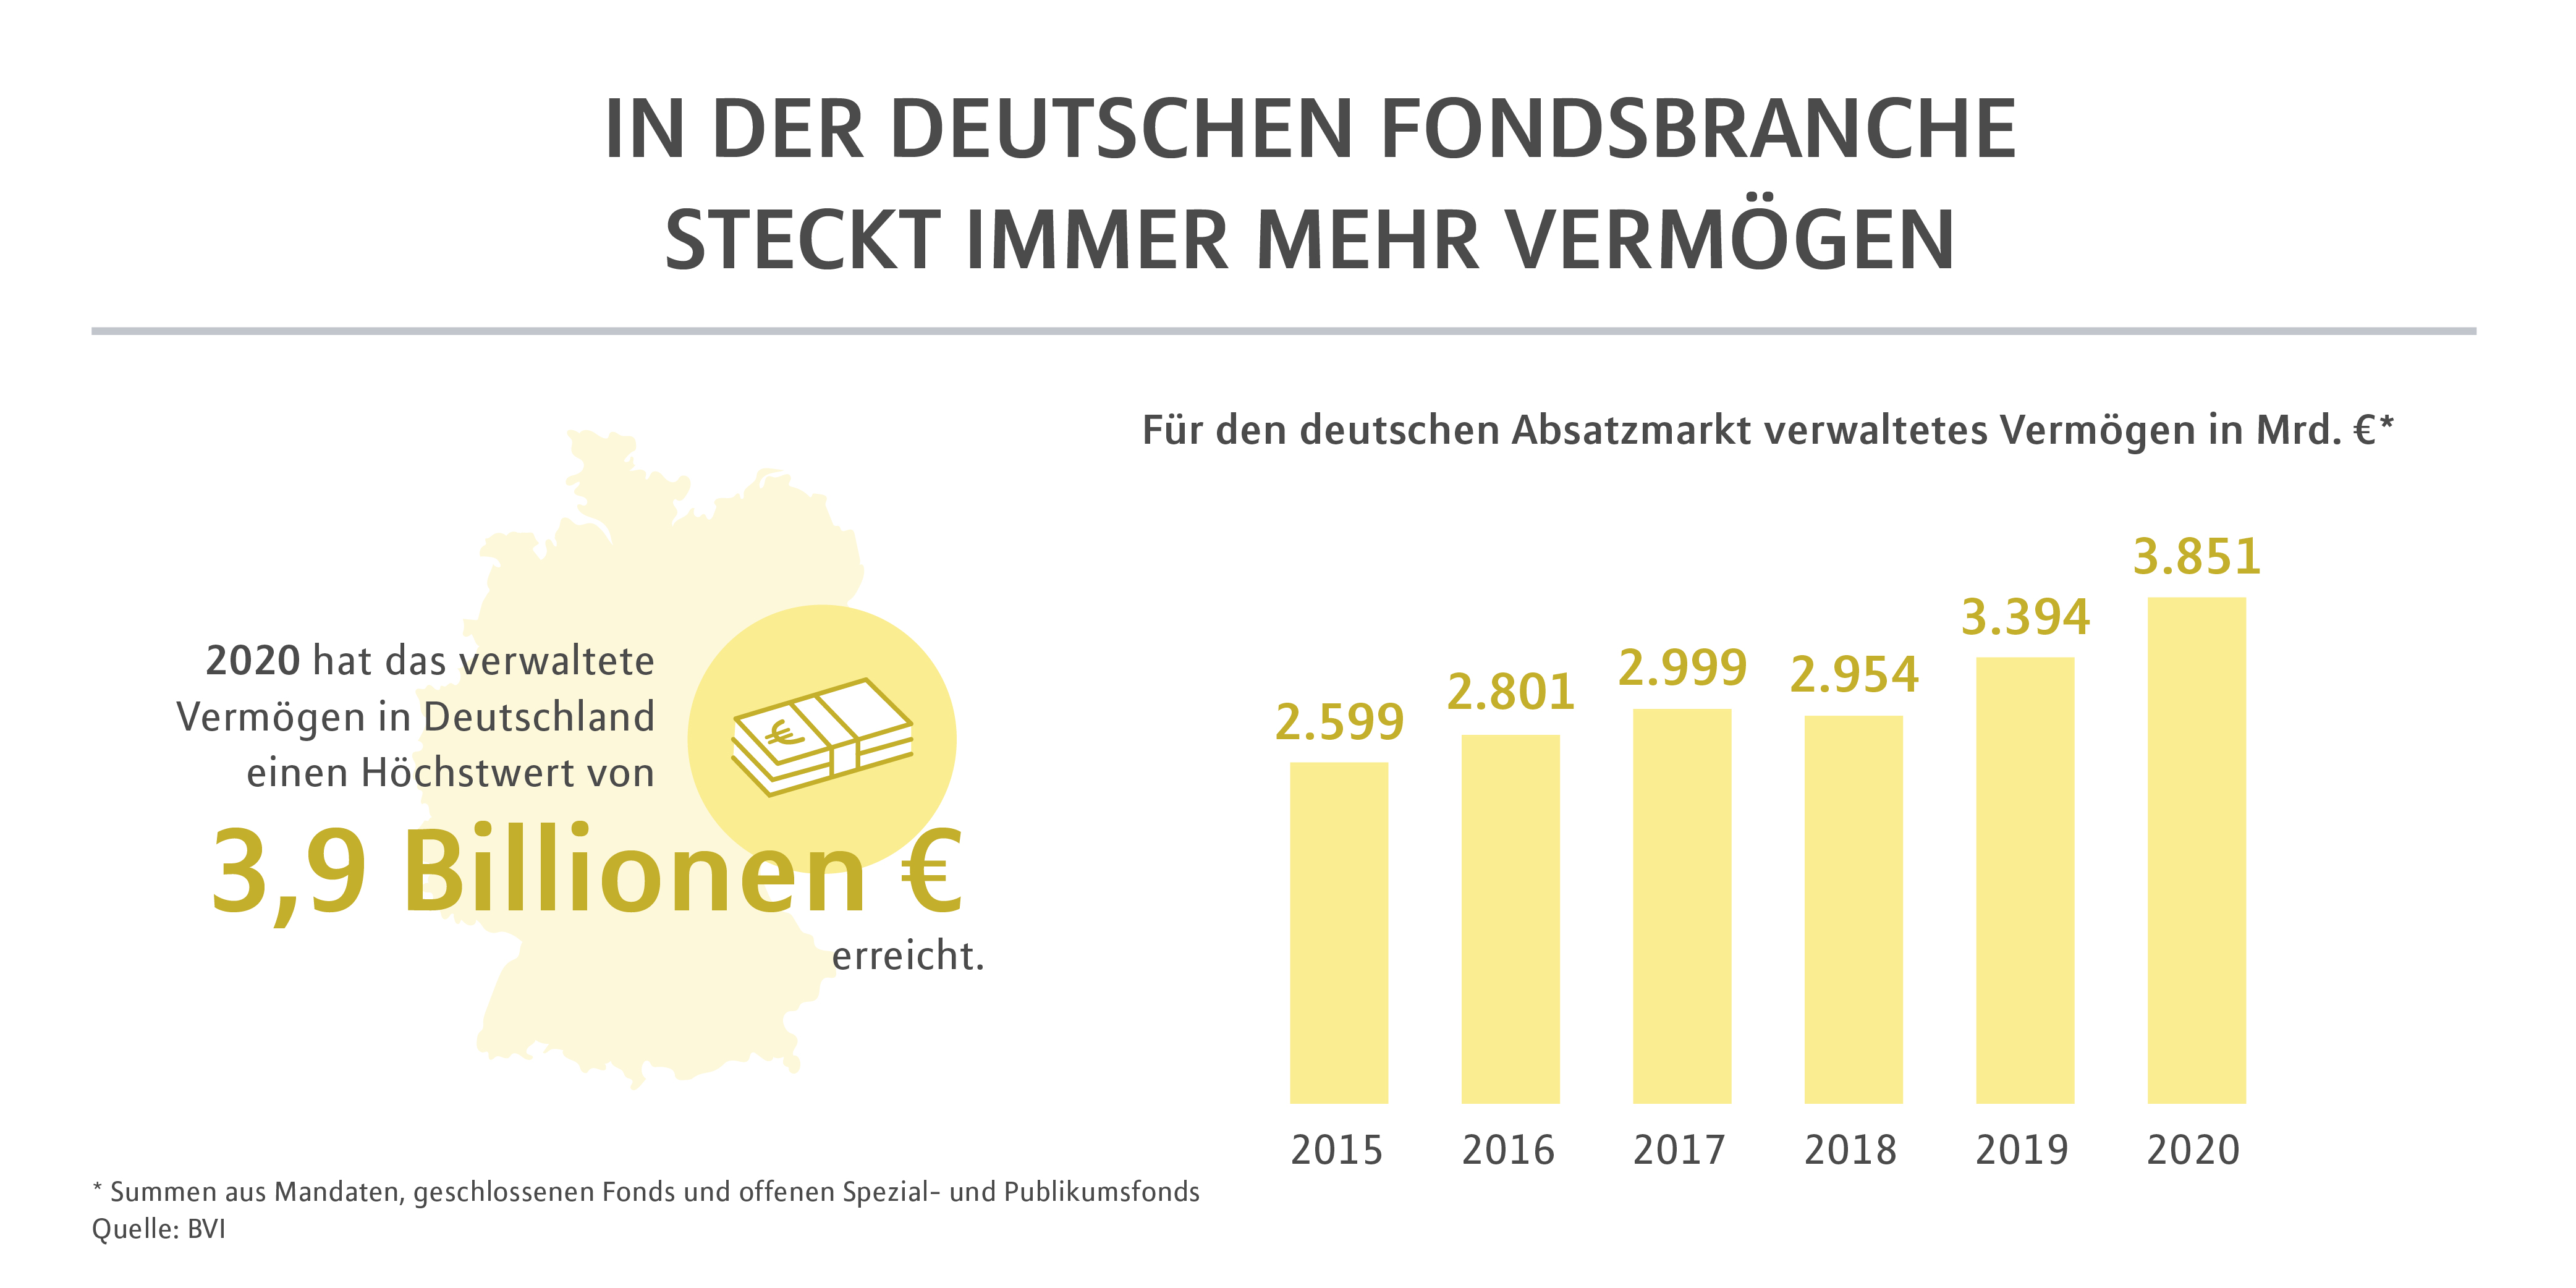 In der Deutschen Fondsbranche steckt immer mehr Vermögen 